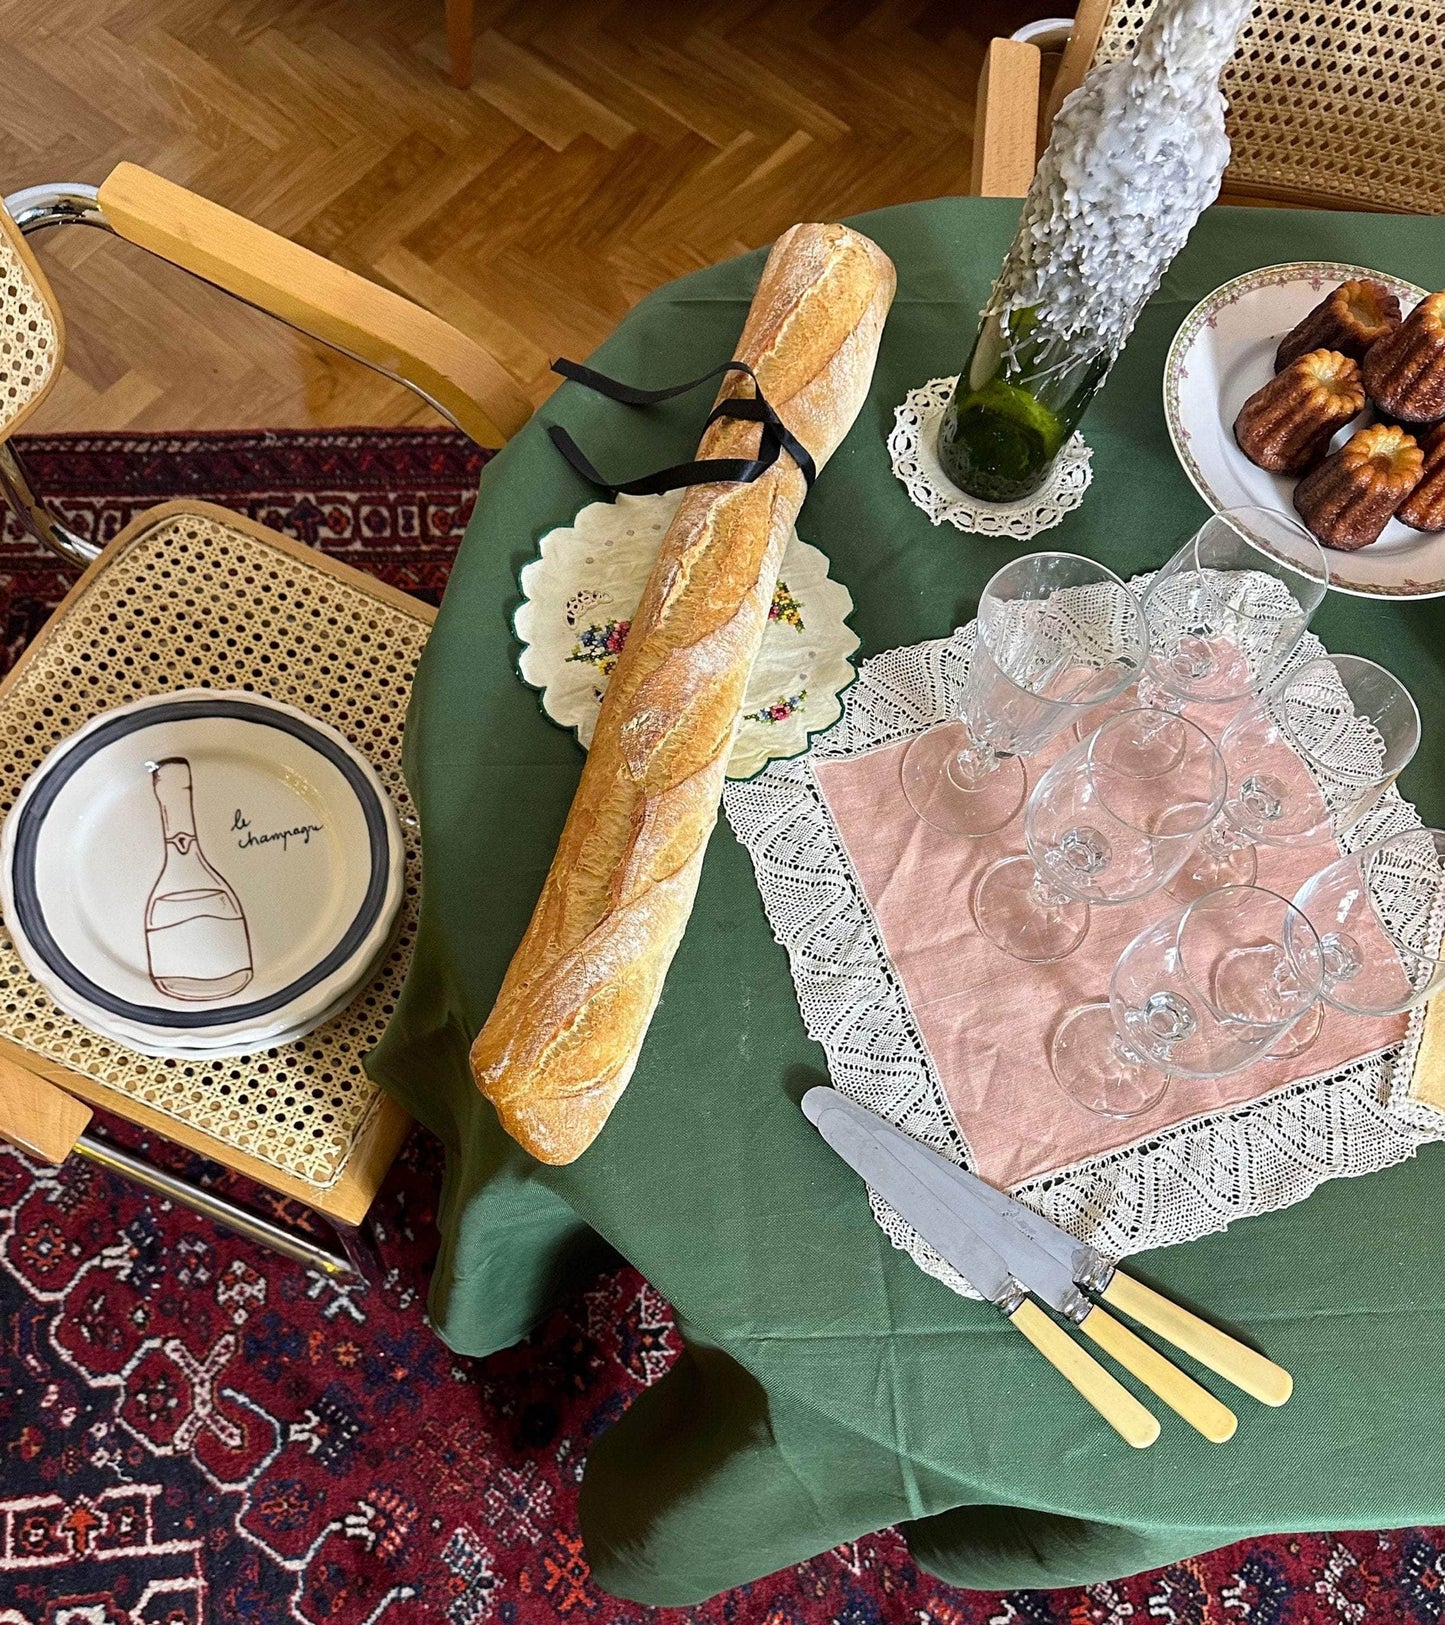 Bistró Dining Plates - Set of 4